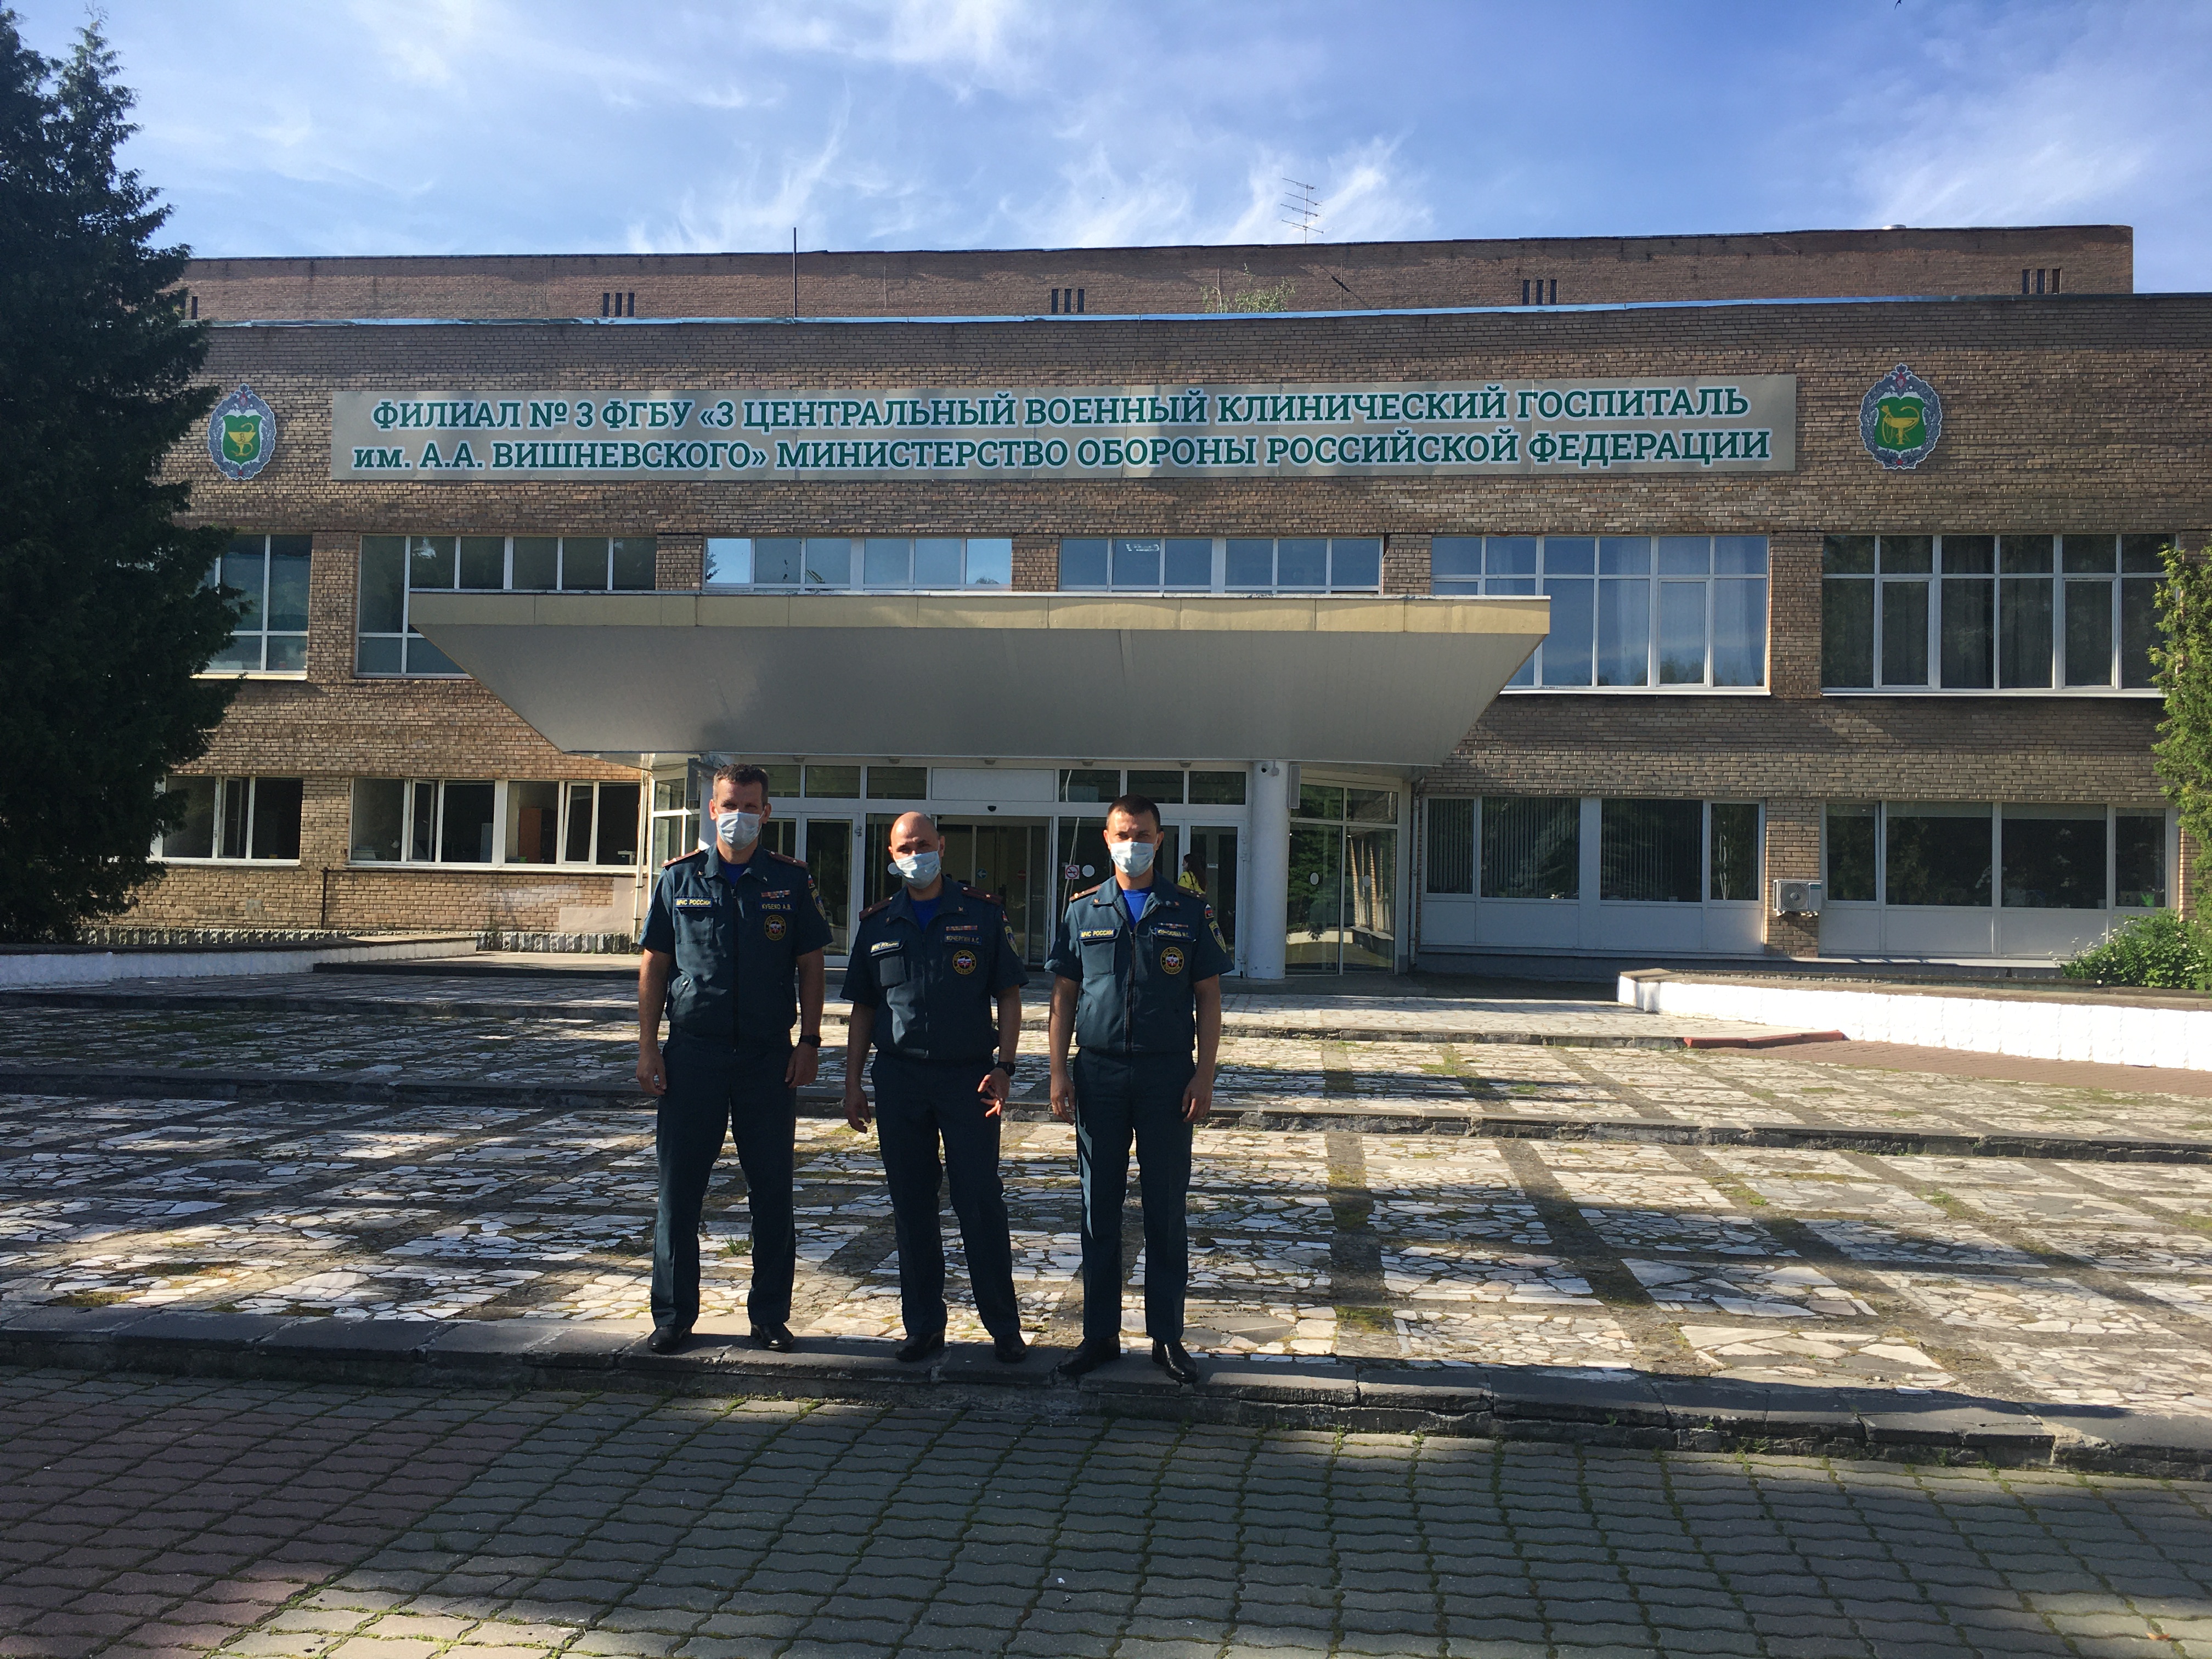 3 центральный военный клинический госпиталь им вишневского